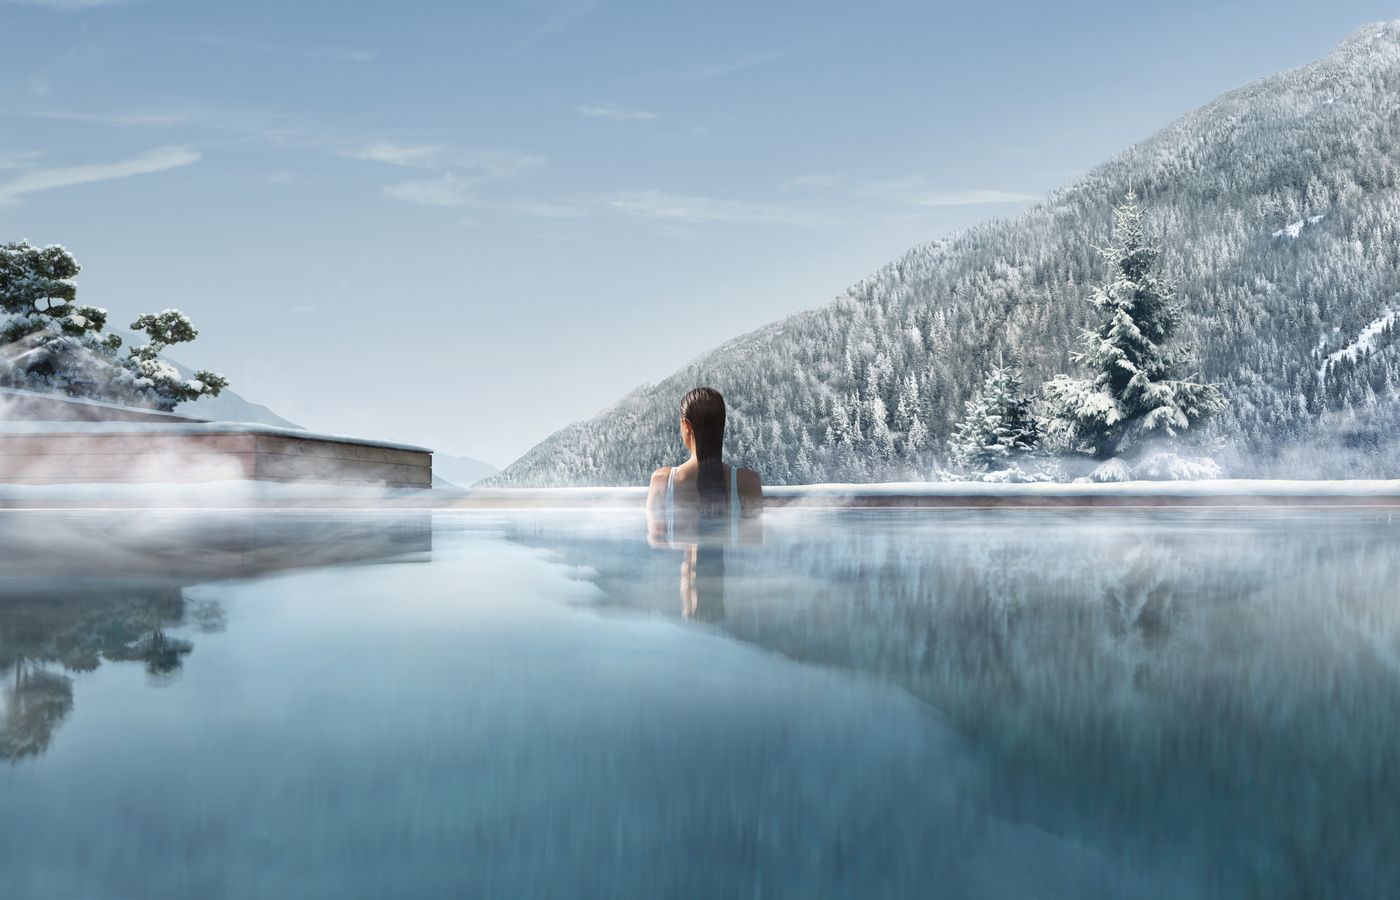 Trip Weißrussland - FitReisen - Lefay Resort & Spa Dolomiti in Pinzolo buche jetzt Deinen Wellness & Beauty Urlaub im Lefay Resort & Spa Dolomiti in der Region Südtirol, in Italien günstig bei uns!